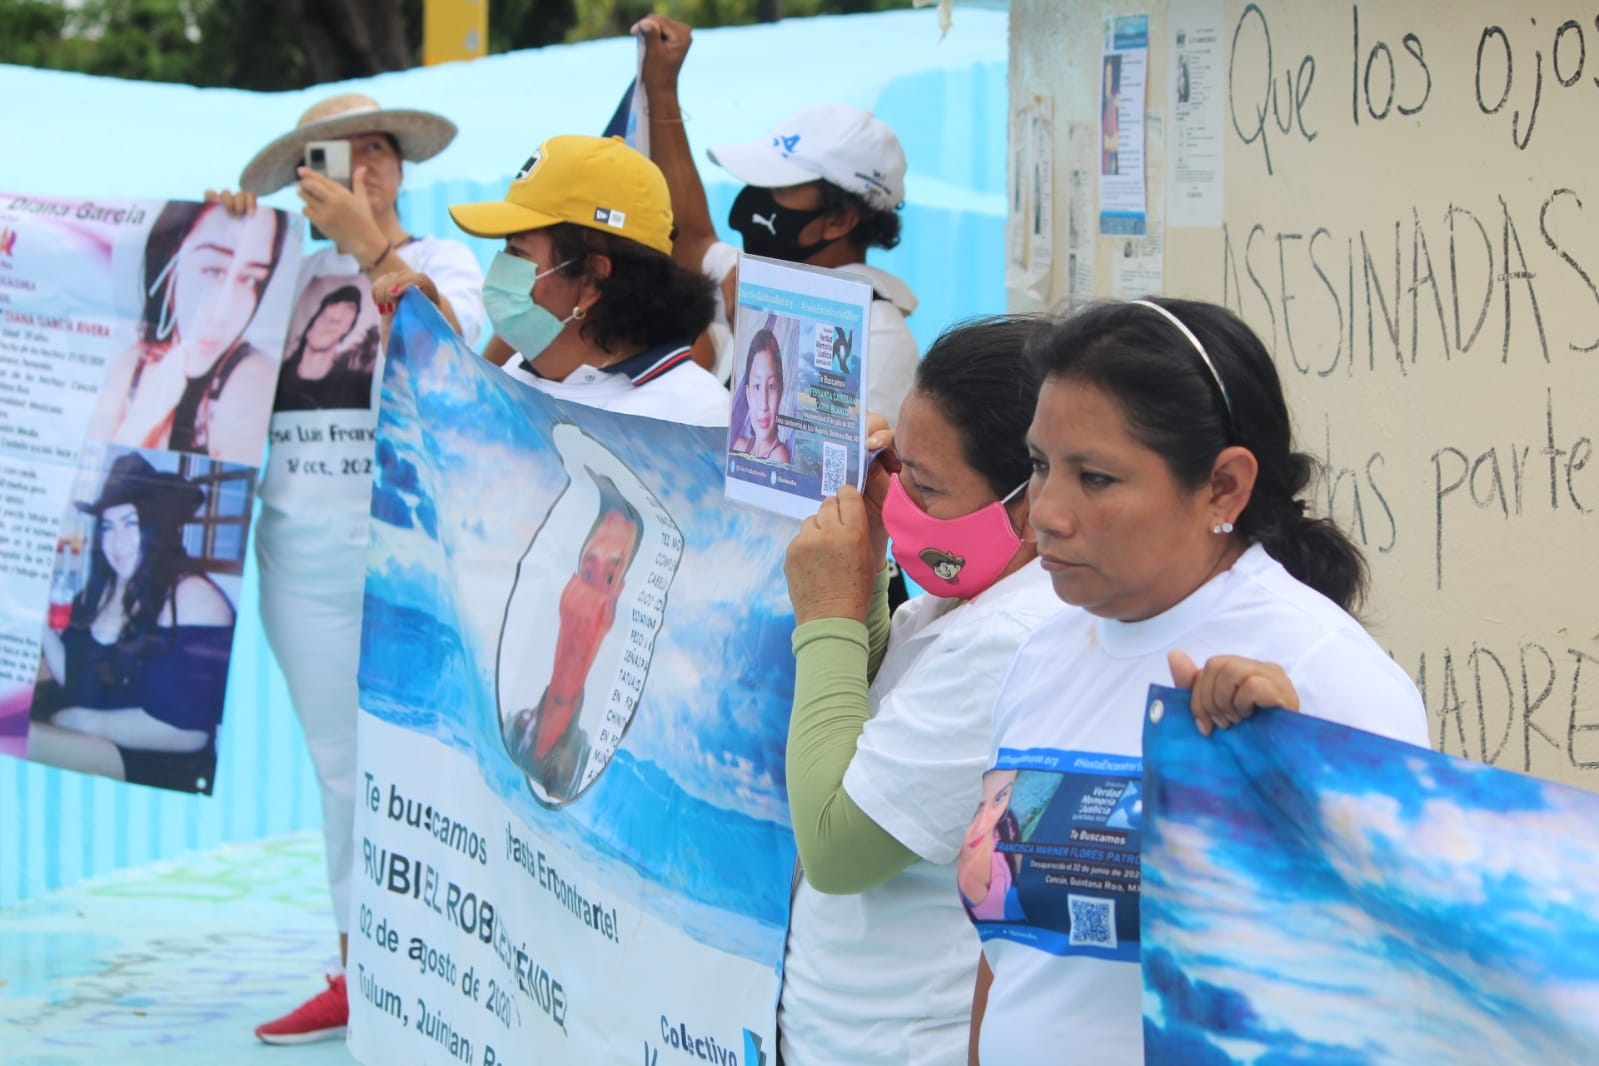 Los familiares de personas desaparecidas en Quintana Roo que conforman el colectivo 'Verdad, Memoria y Justicia' recriminaron el lento actuar de la FGE Quintana Roo